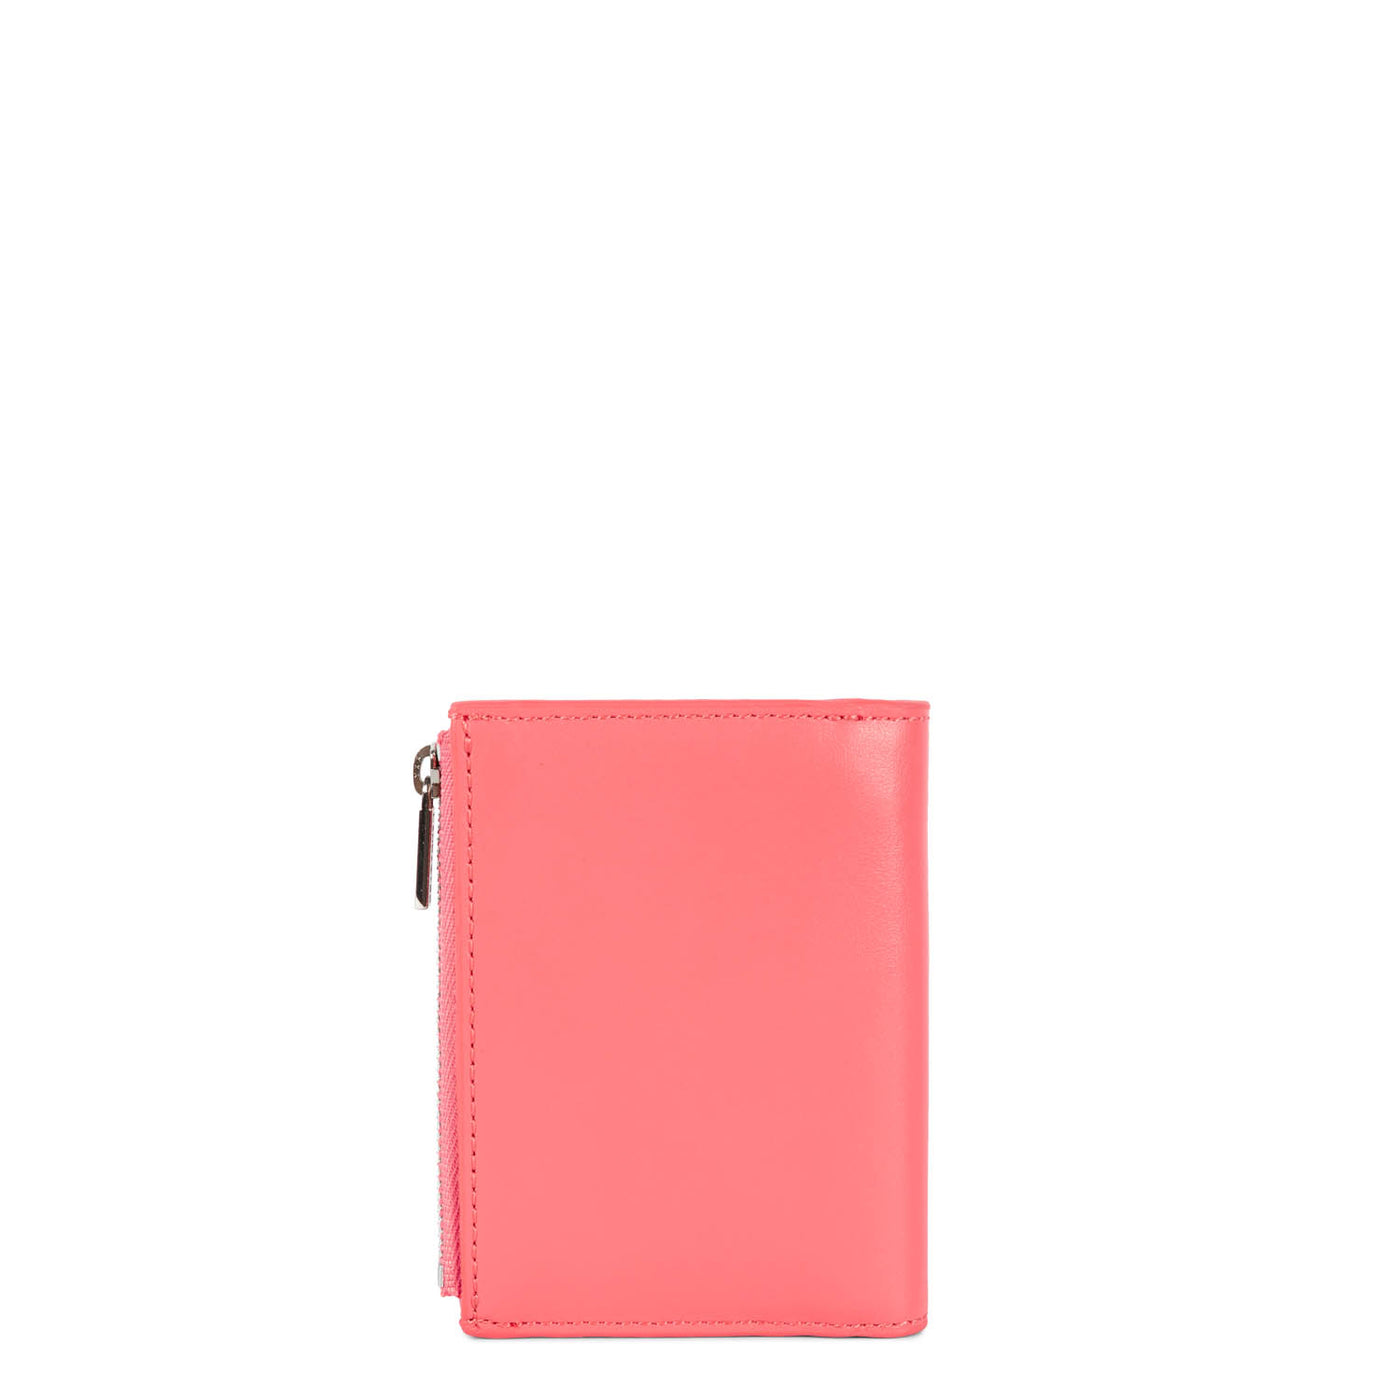 wallet - paris pm #couleur_rose-bonbon